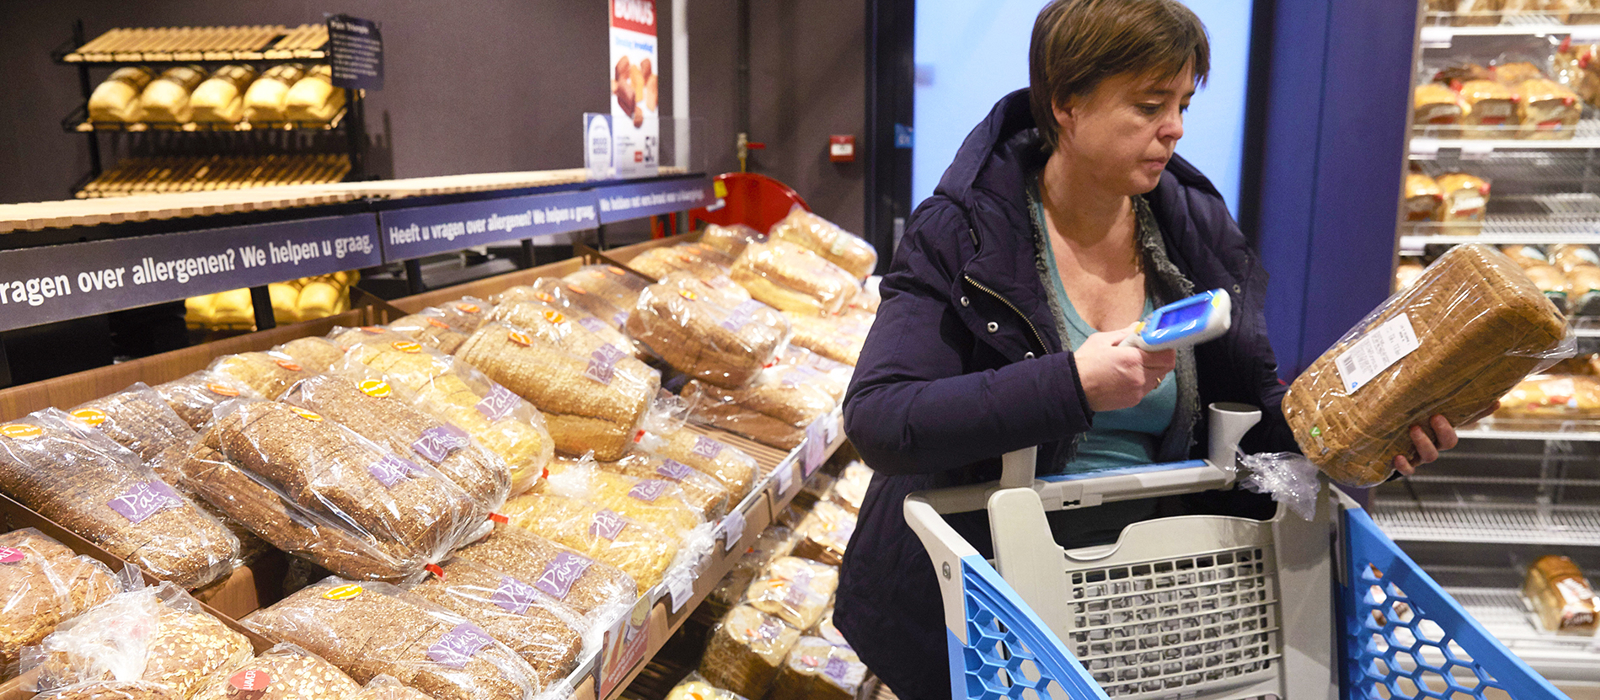 Vrouw scant brood met zelfscanner in supermarkt